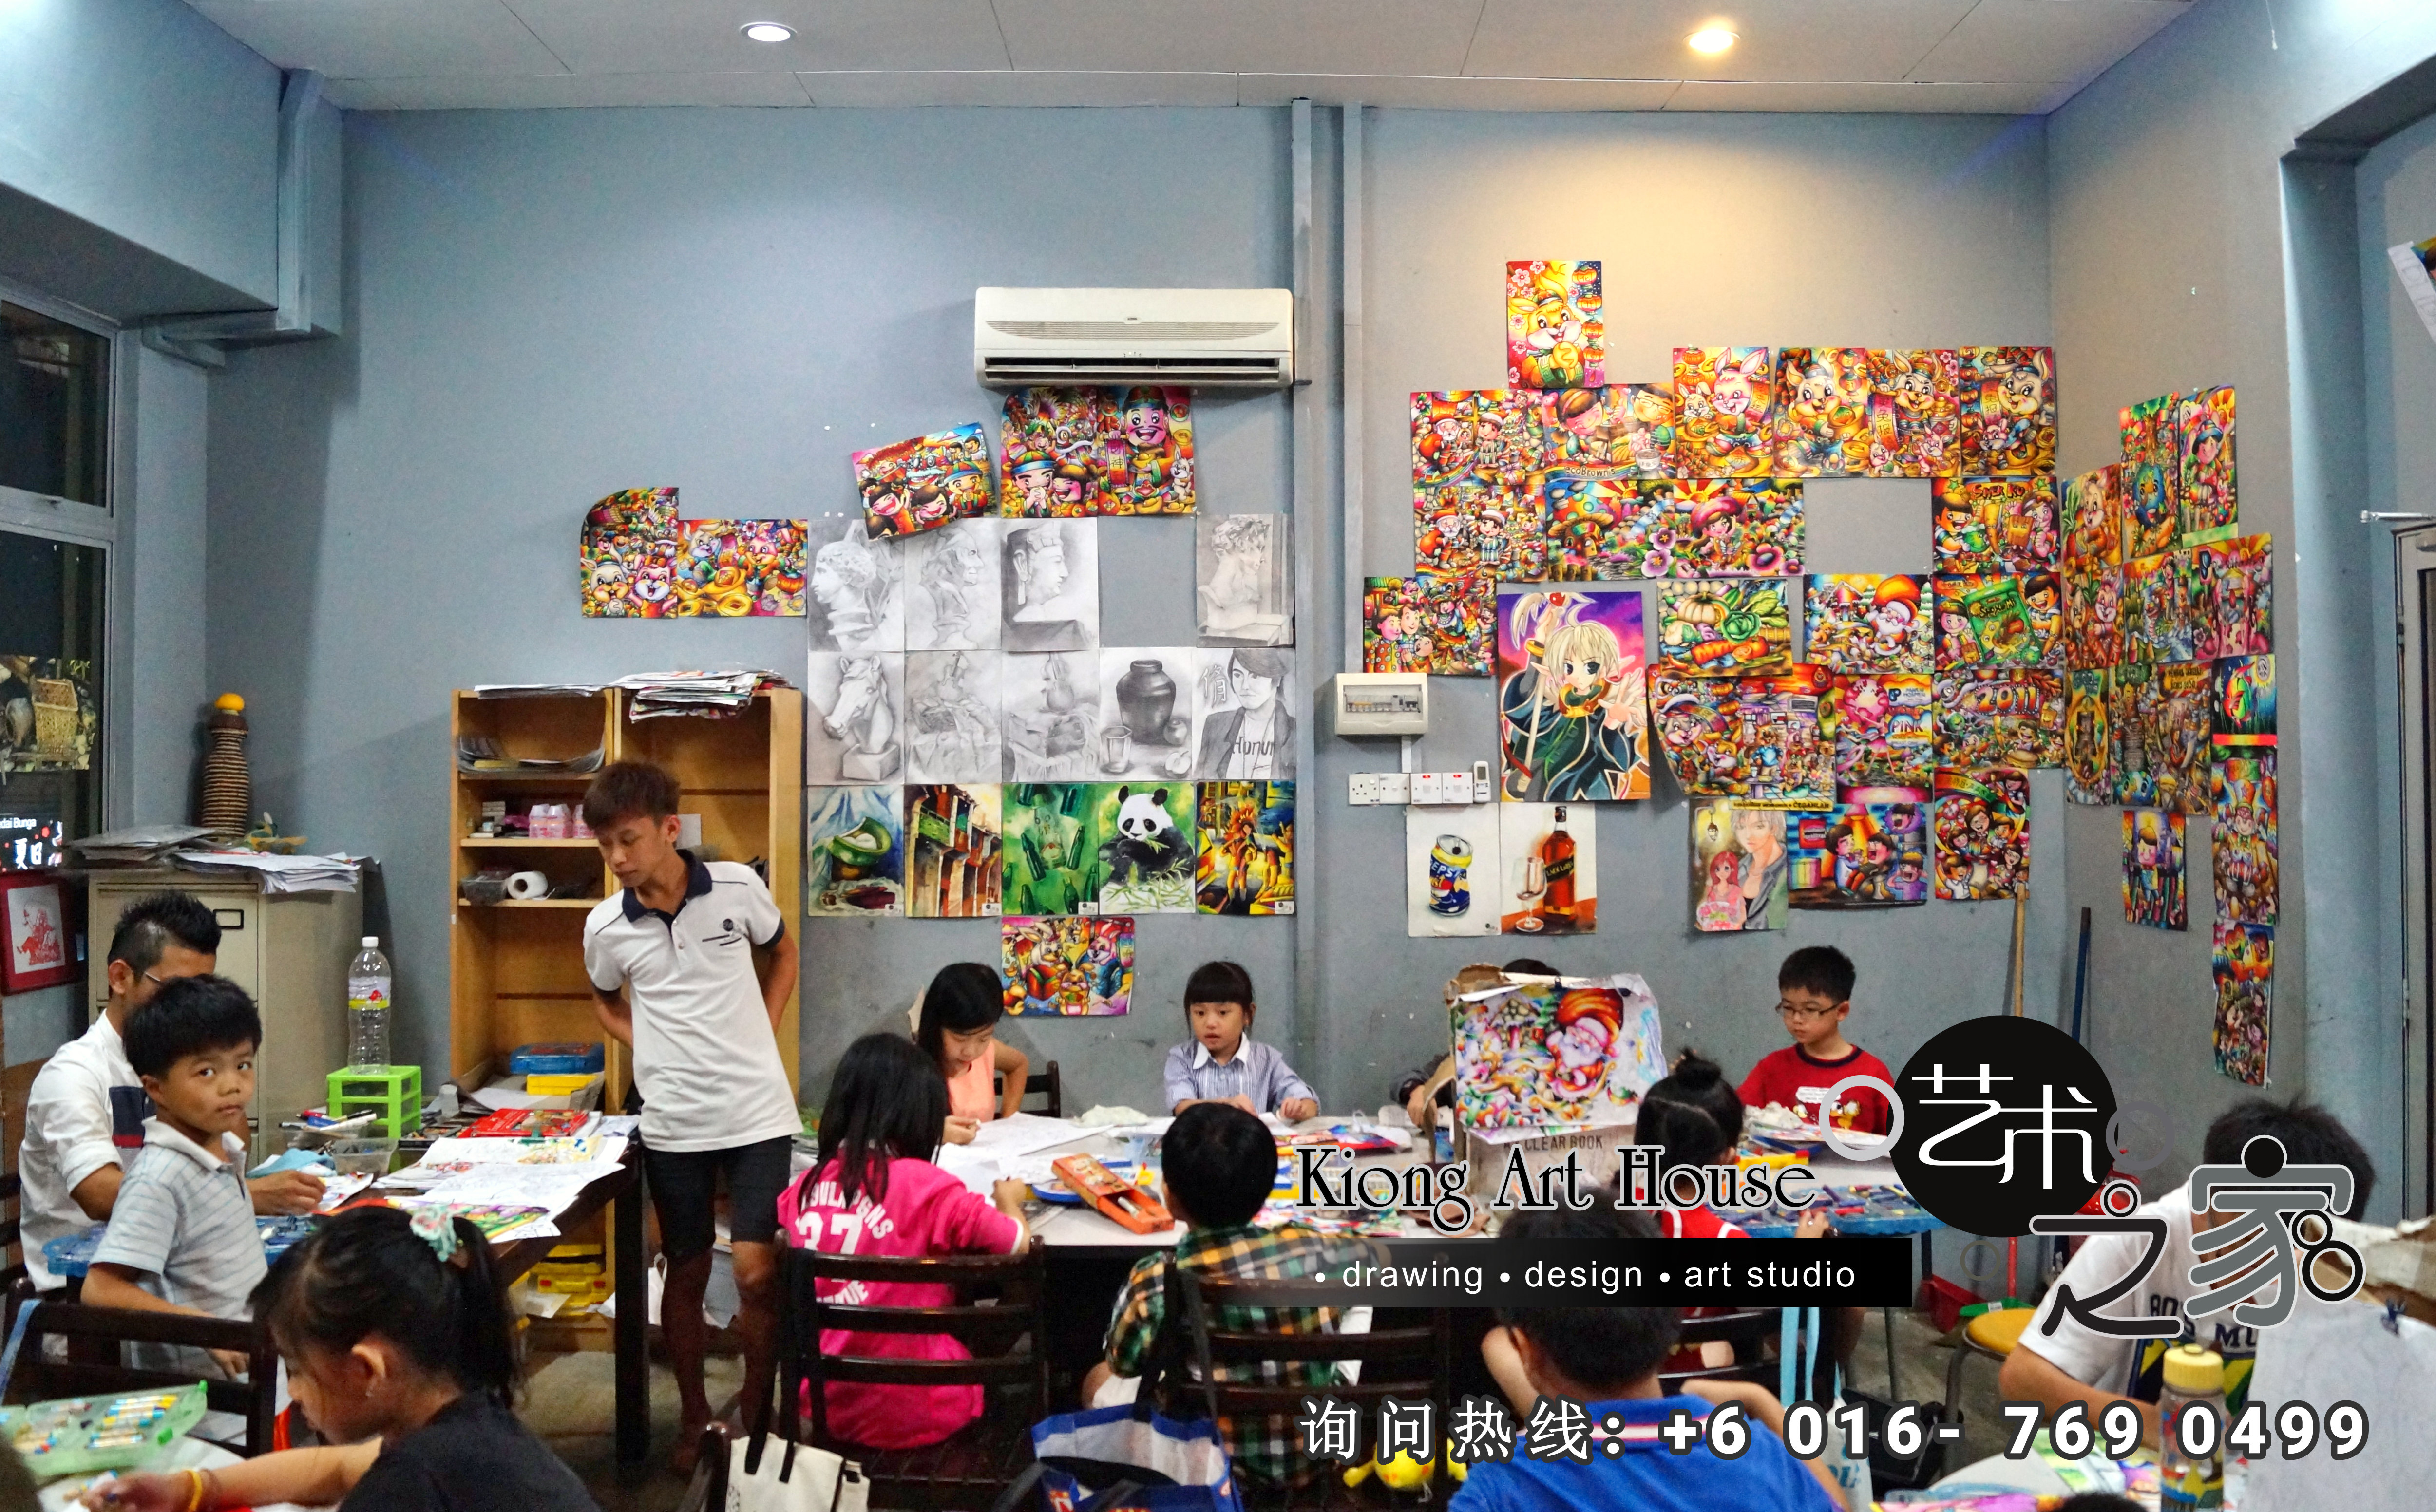 马来西亚 柔佛 峇株吧辖 美术课程 艺术画室 儿童绘画 彩图 水彩画 木笔画 蜡笔画 素描 油画 广告画 壁画 板画 布画 漫画 Kiong Art 艺术之家美术画室 A01-08